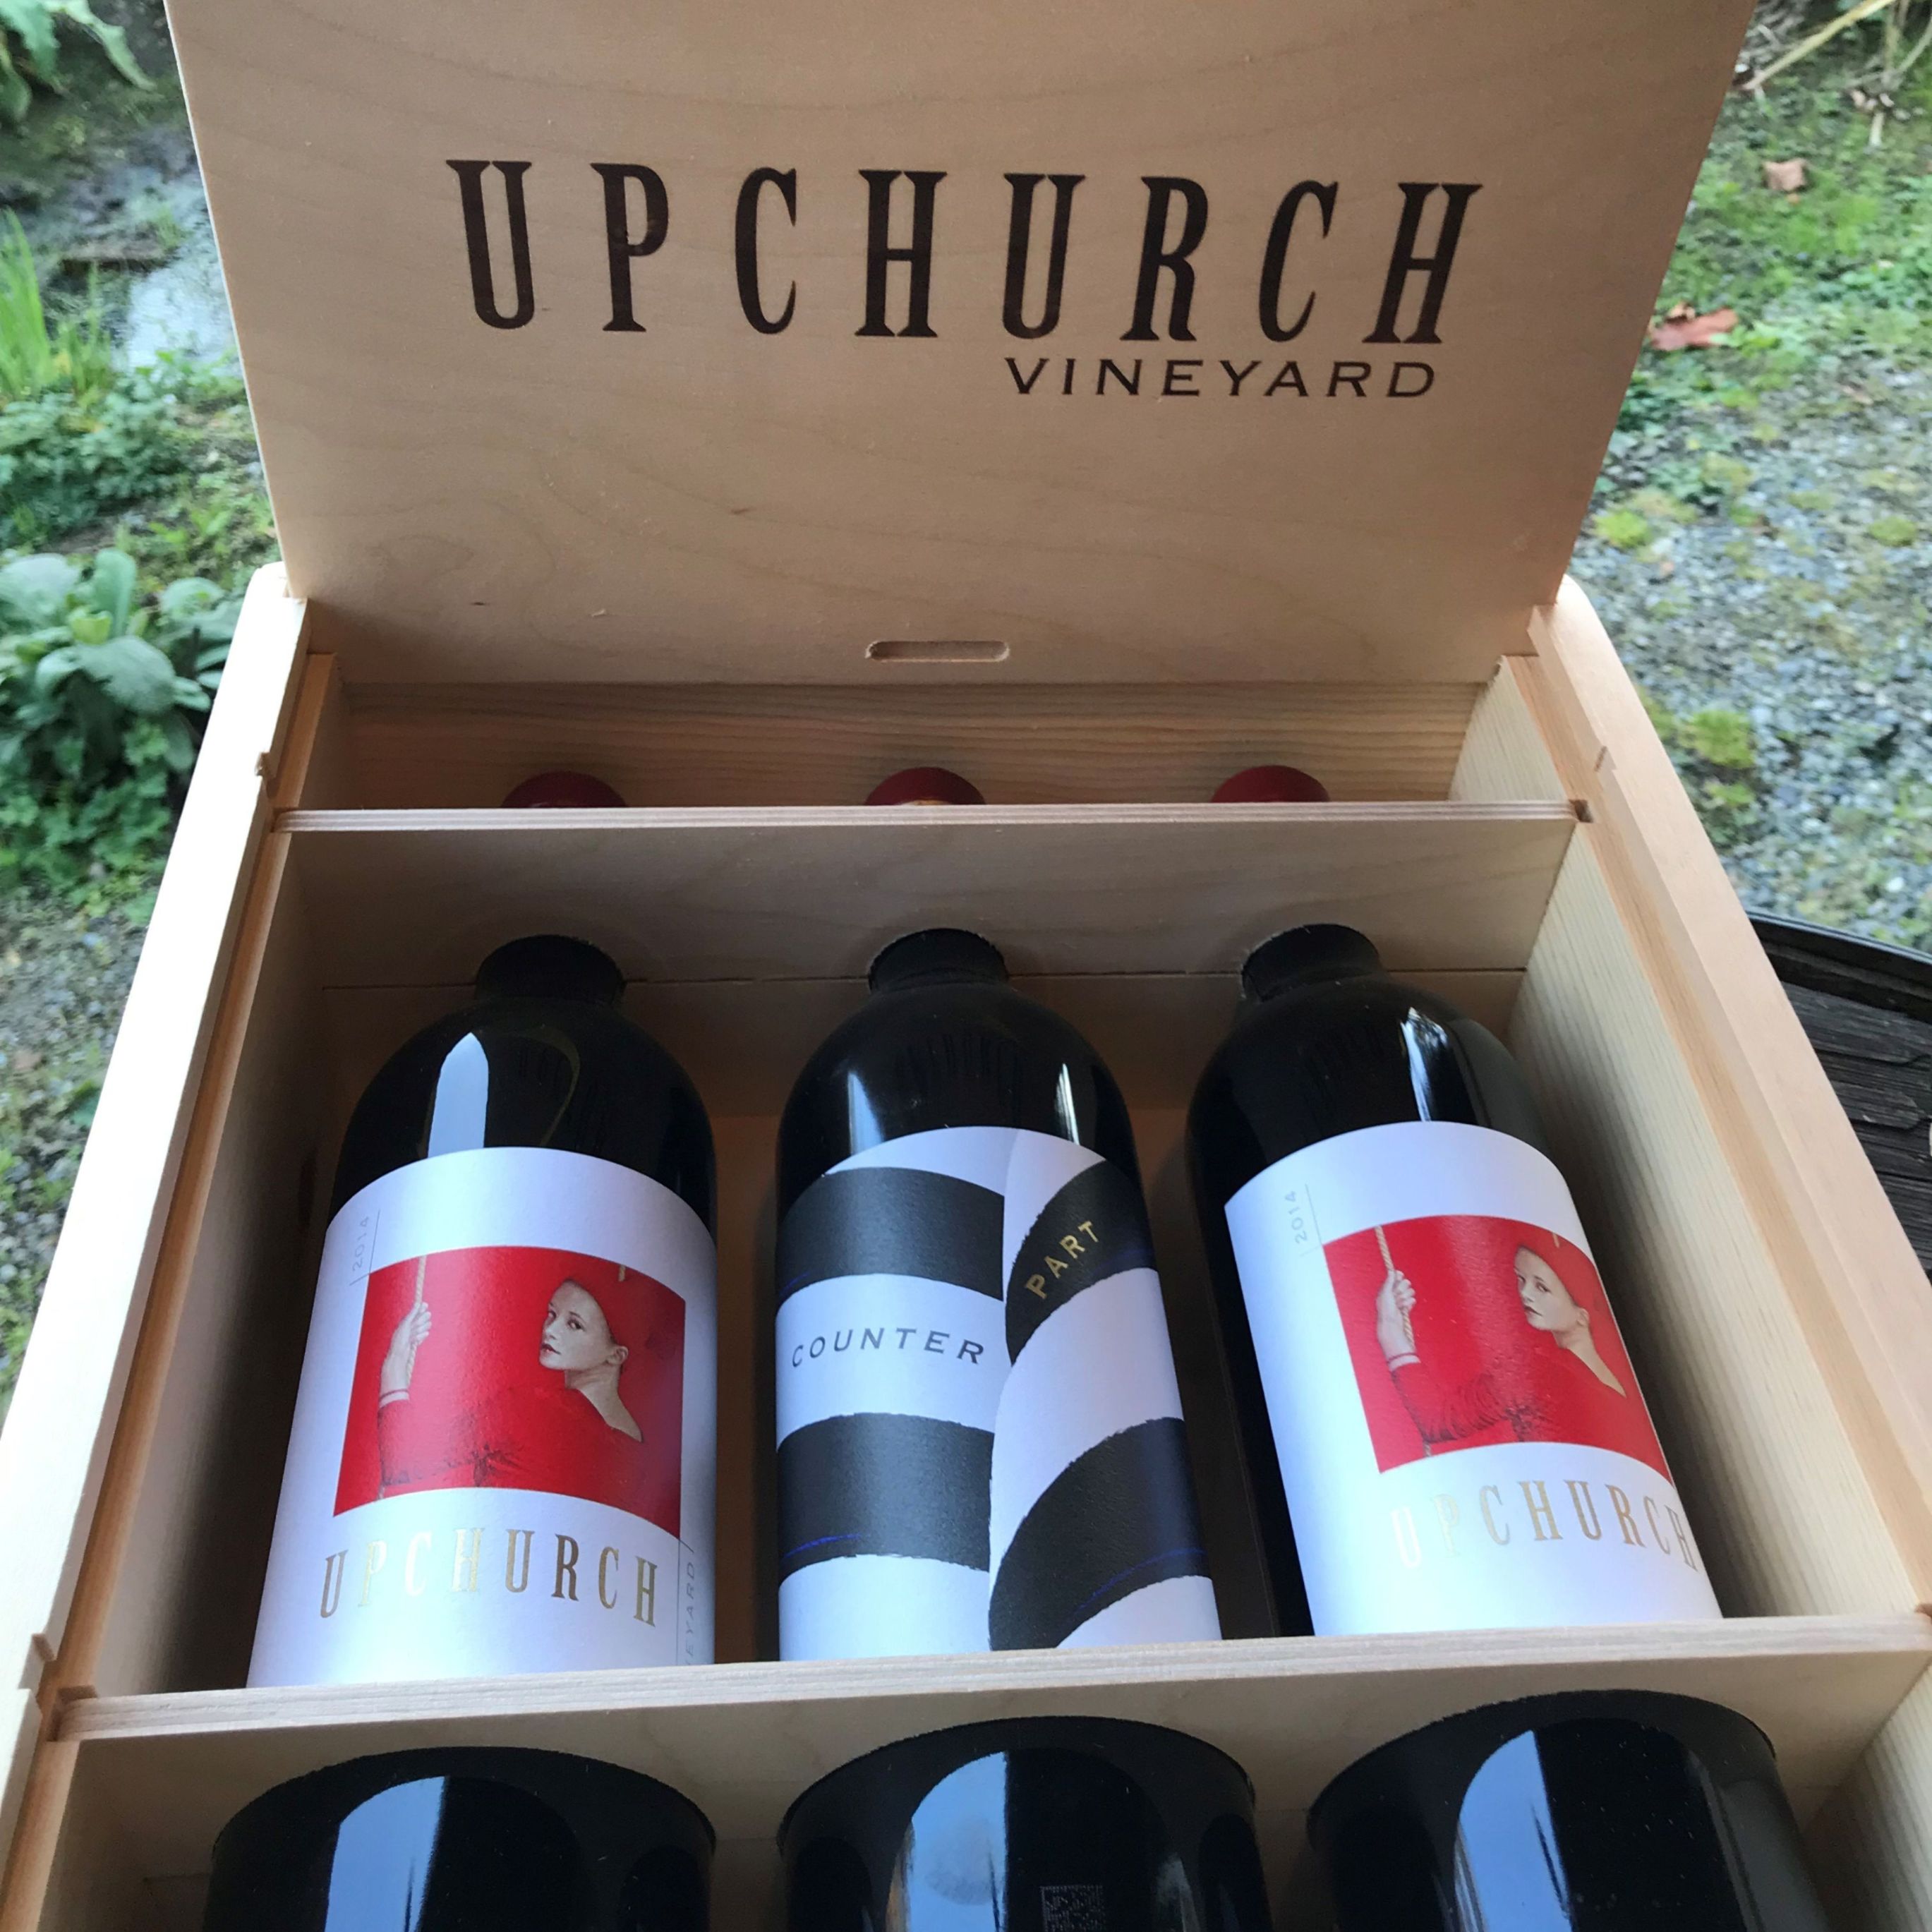  Upchurch Vineyard Update